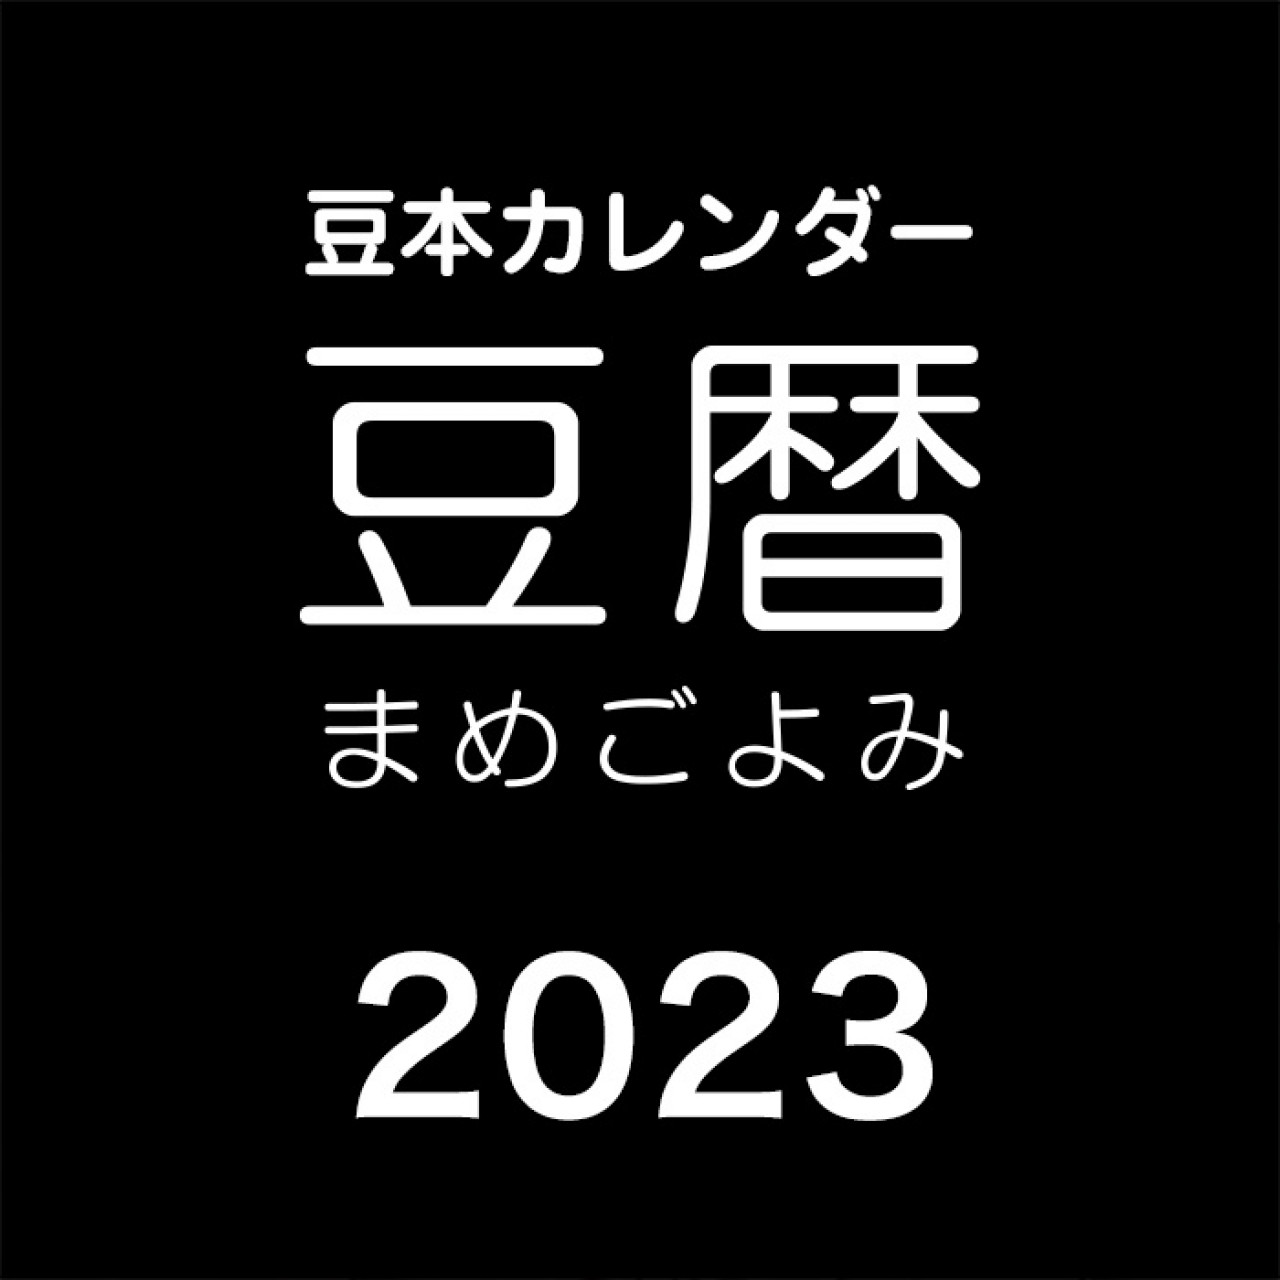 豆本カレンダー「豆暦2023」